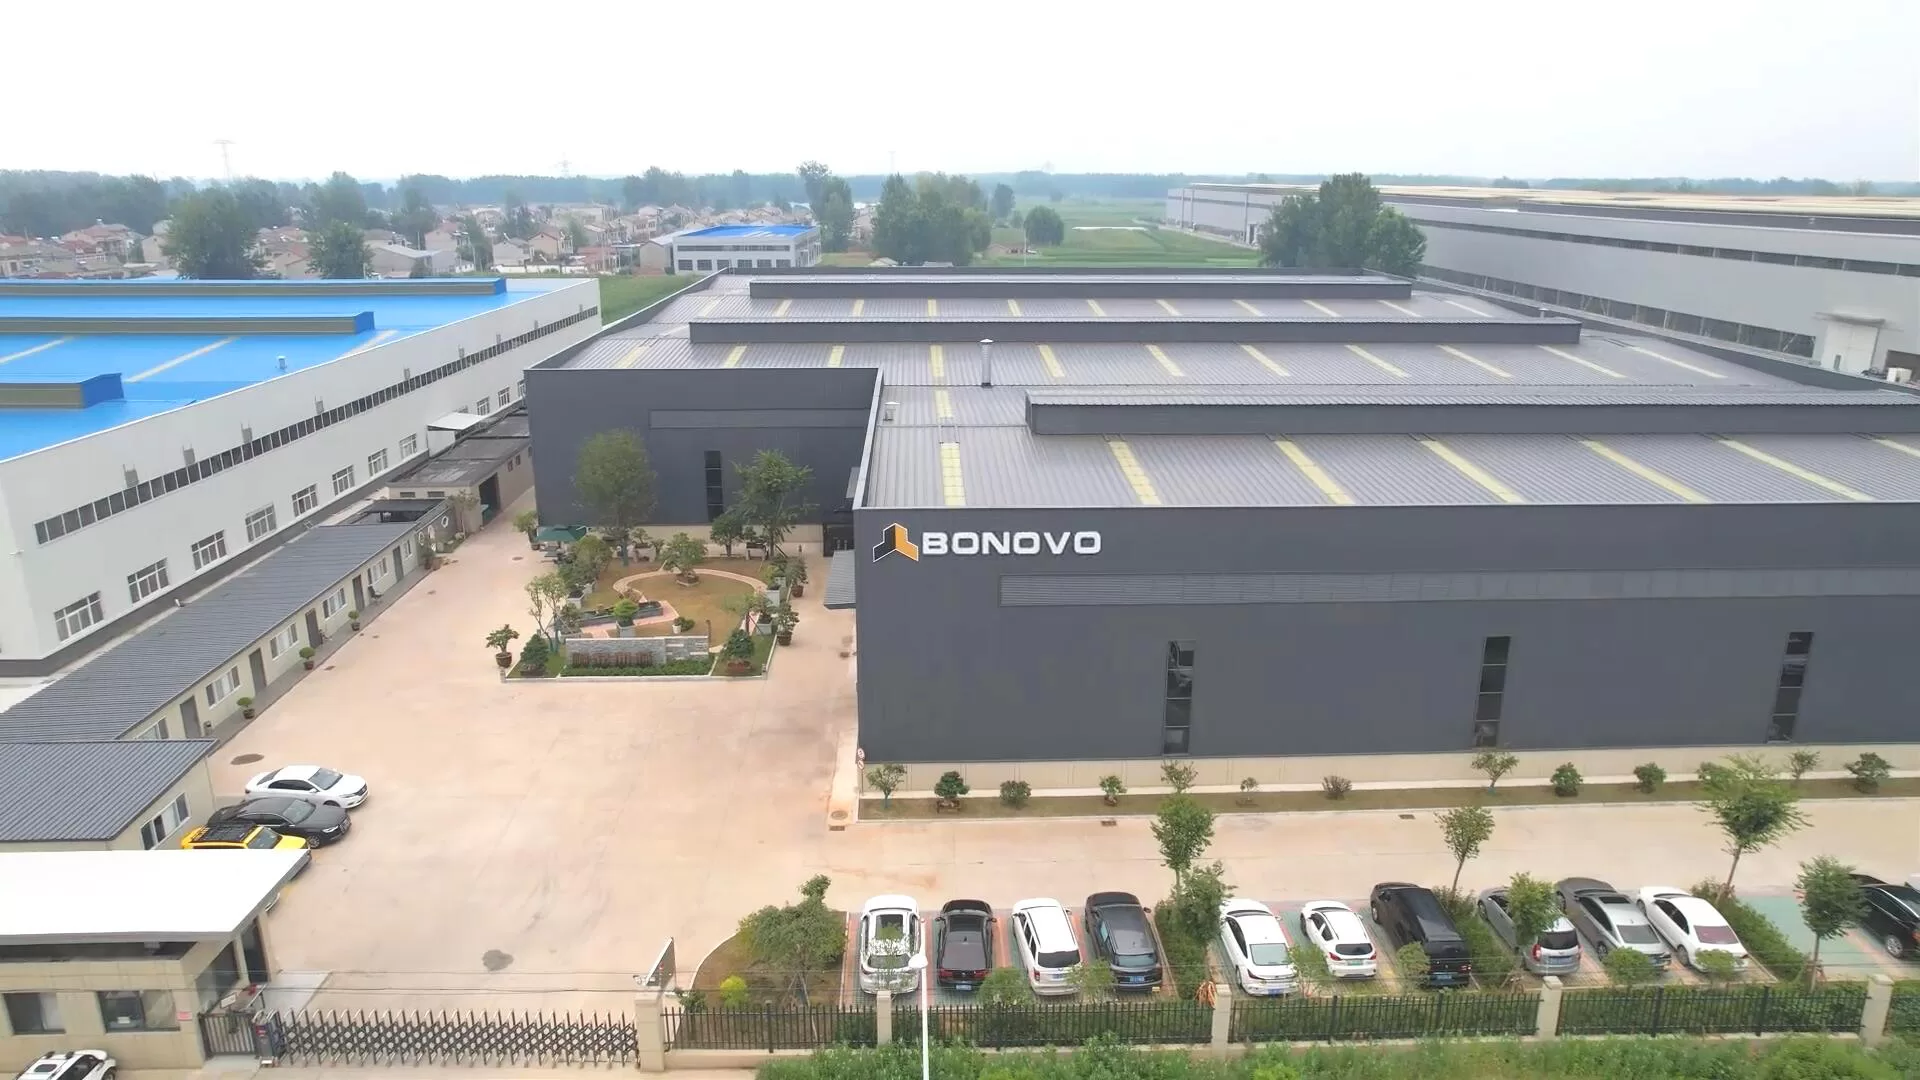 BONOVO manufacture